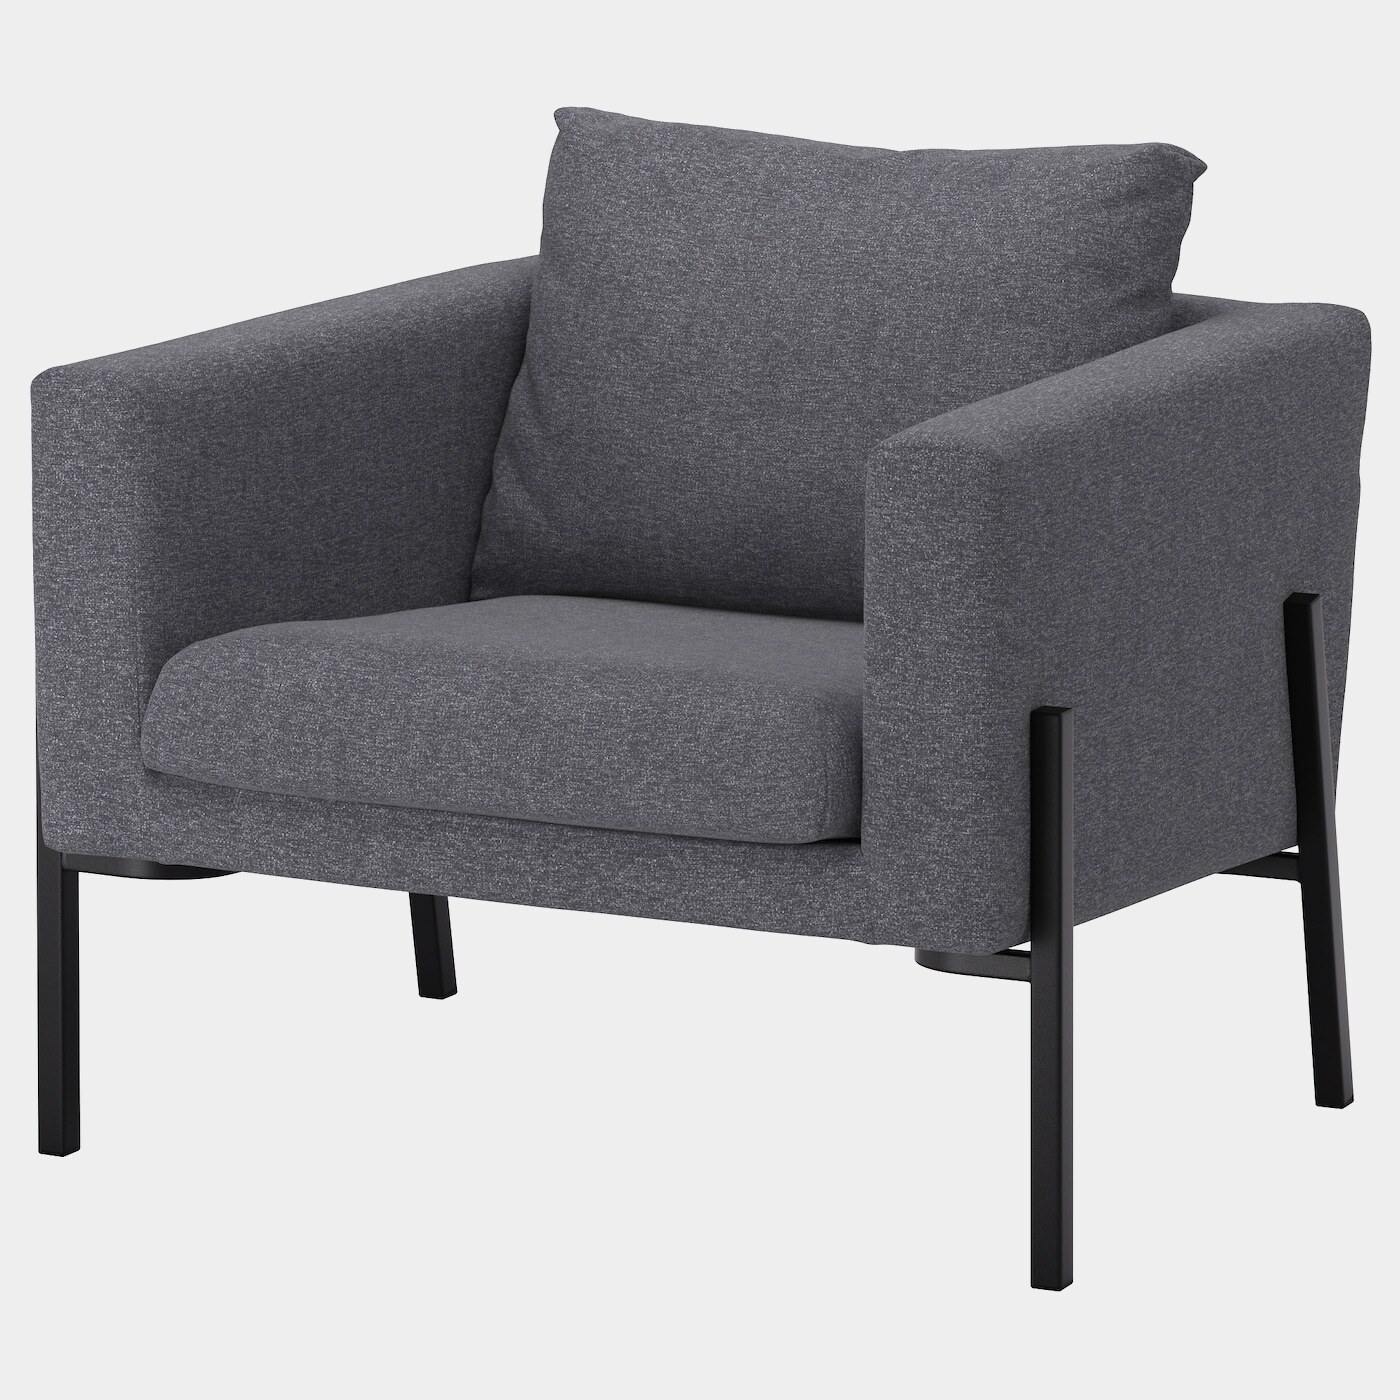 KOARP Bezug Sessel  - extra Bezüge - Möbel Ideen für dein Zuhause von Home Trends. Möbel Trends von Social Media Influencer für dein Skandi Zuhause.